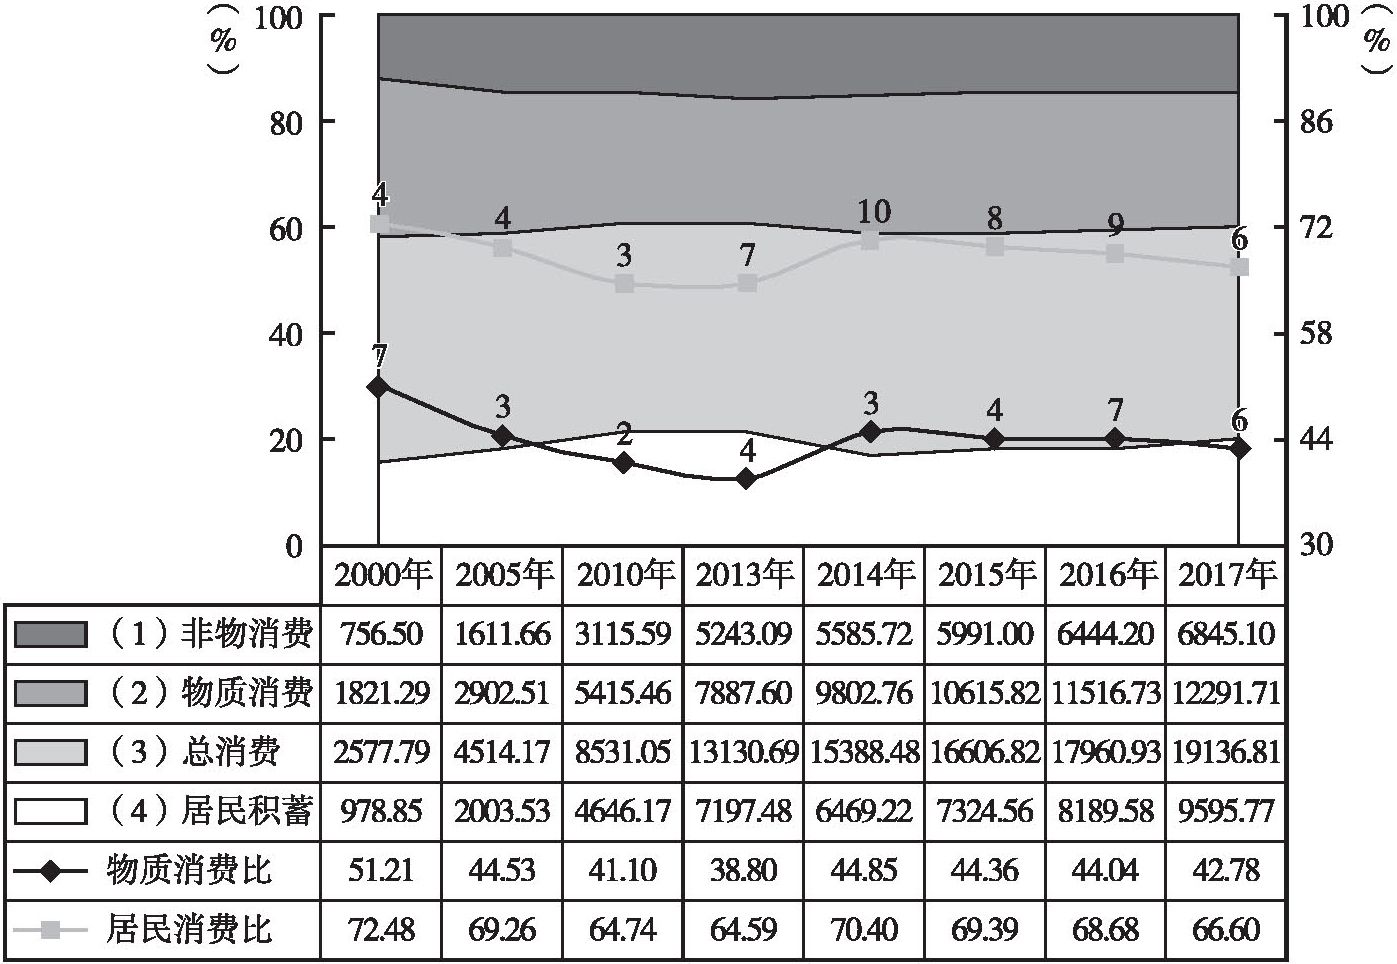 图1 江苏城乡主要民生数据增长变化基本情况